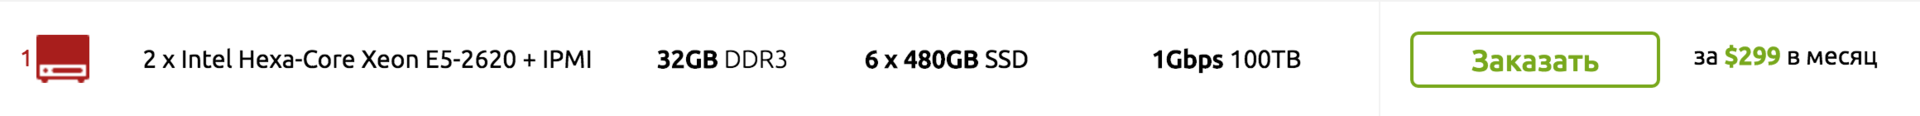 Cерверы с «устаревшими» CPU или более высокая цена? Мы нашли компромисс! 2 x E5620 - 32GB DDR3 - 6 x 240GB SSD - 1Gbps? - 10